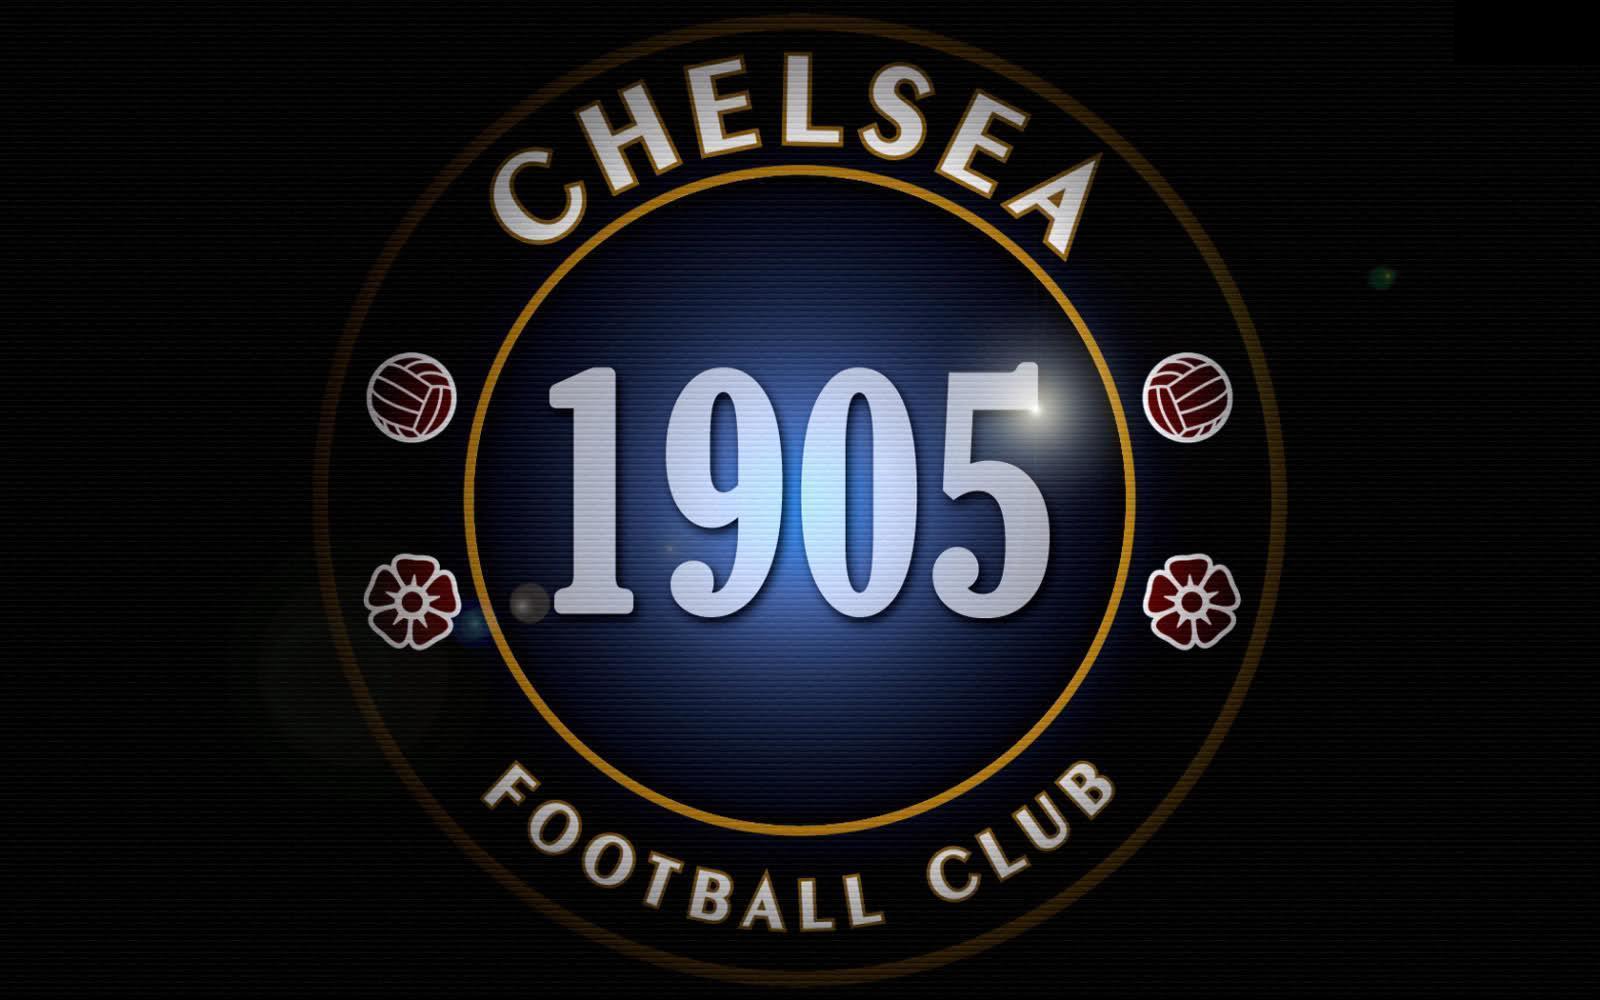 Chelsea Logo 1905